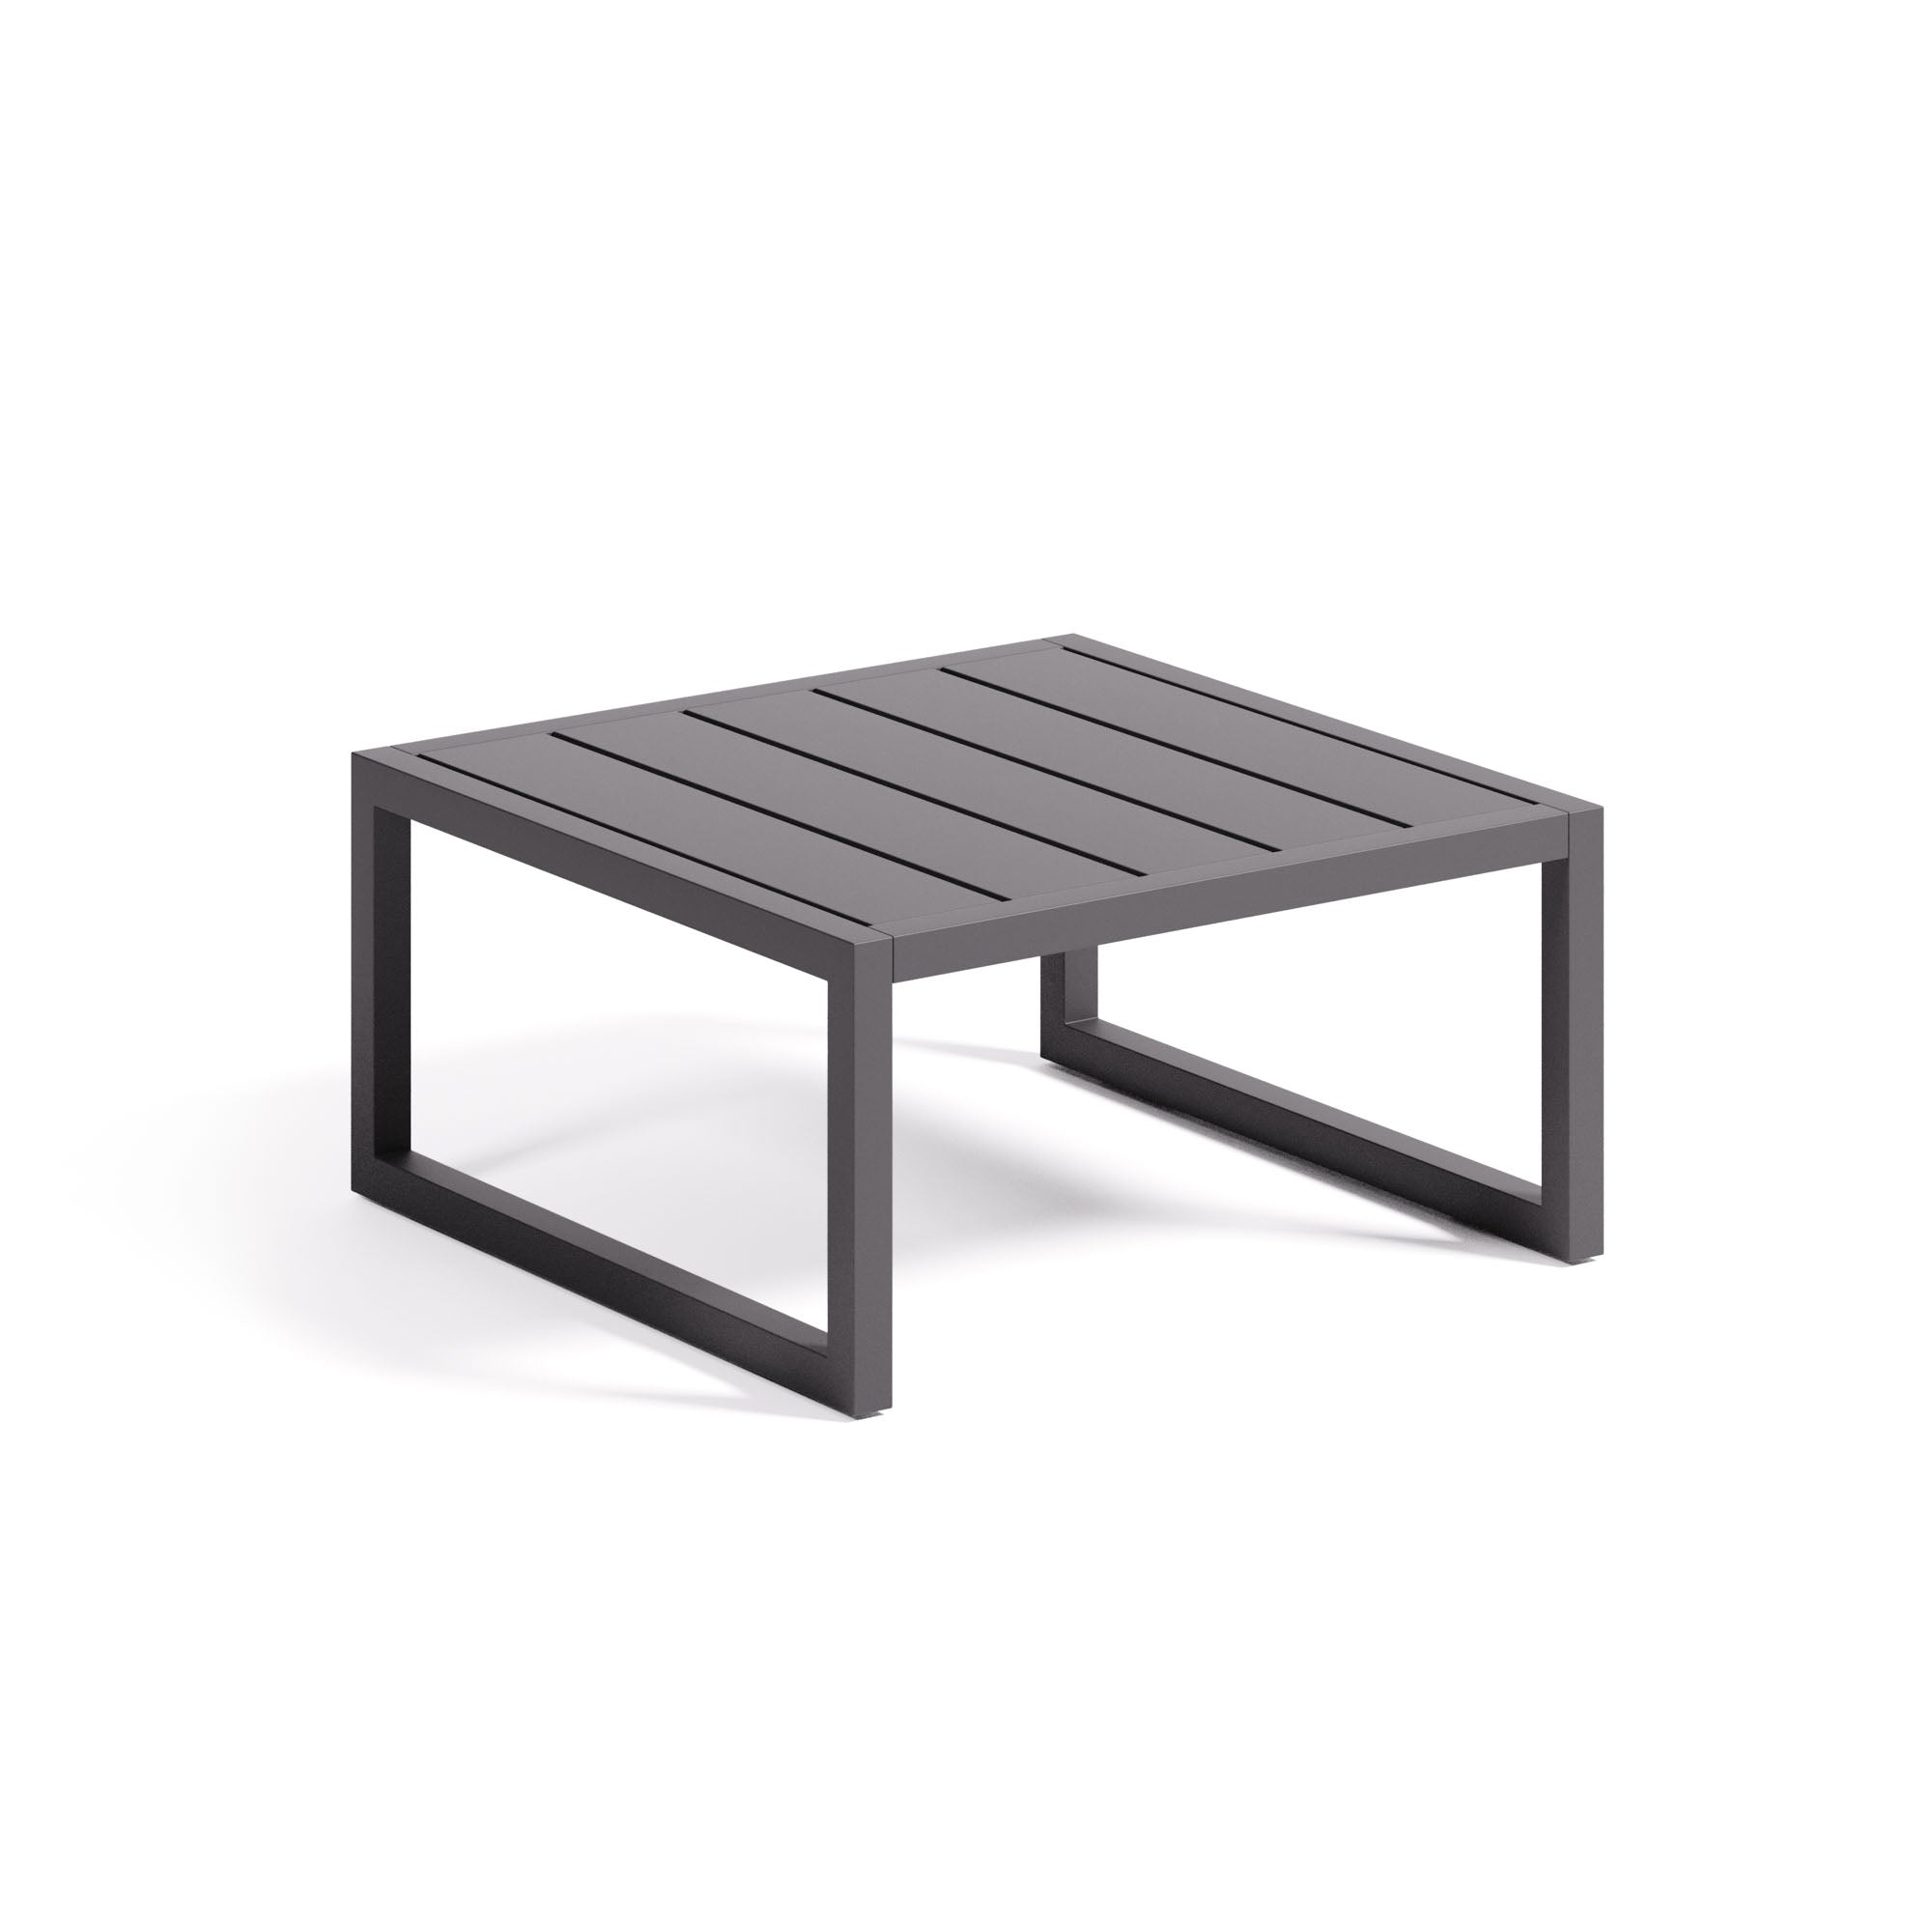 Comova 100% kültéri kisasztal fekete alumíniumból, 60 x 60 cm, 60 x 60 cm